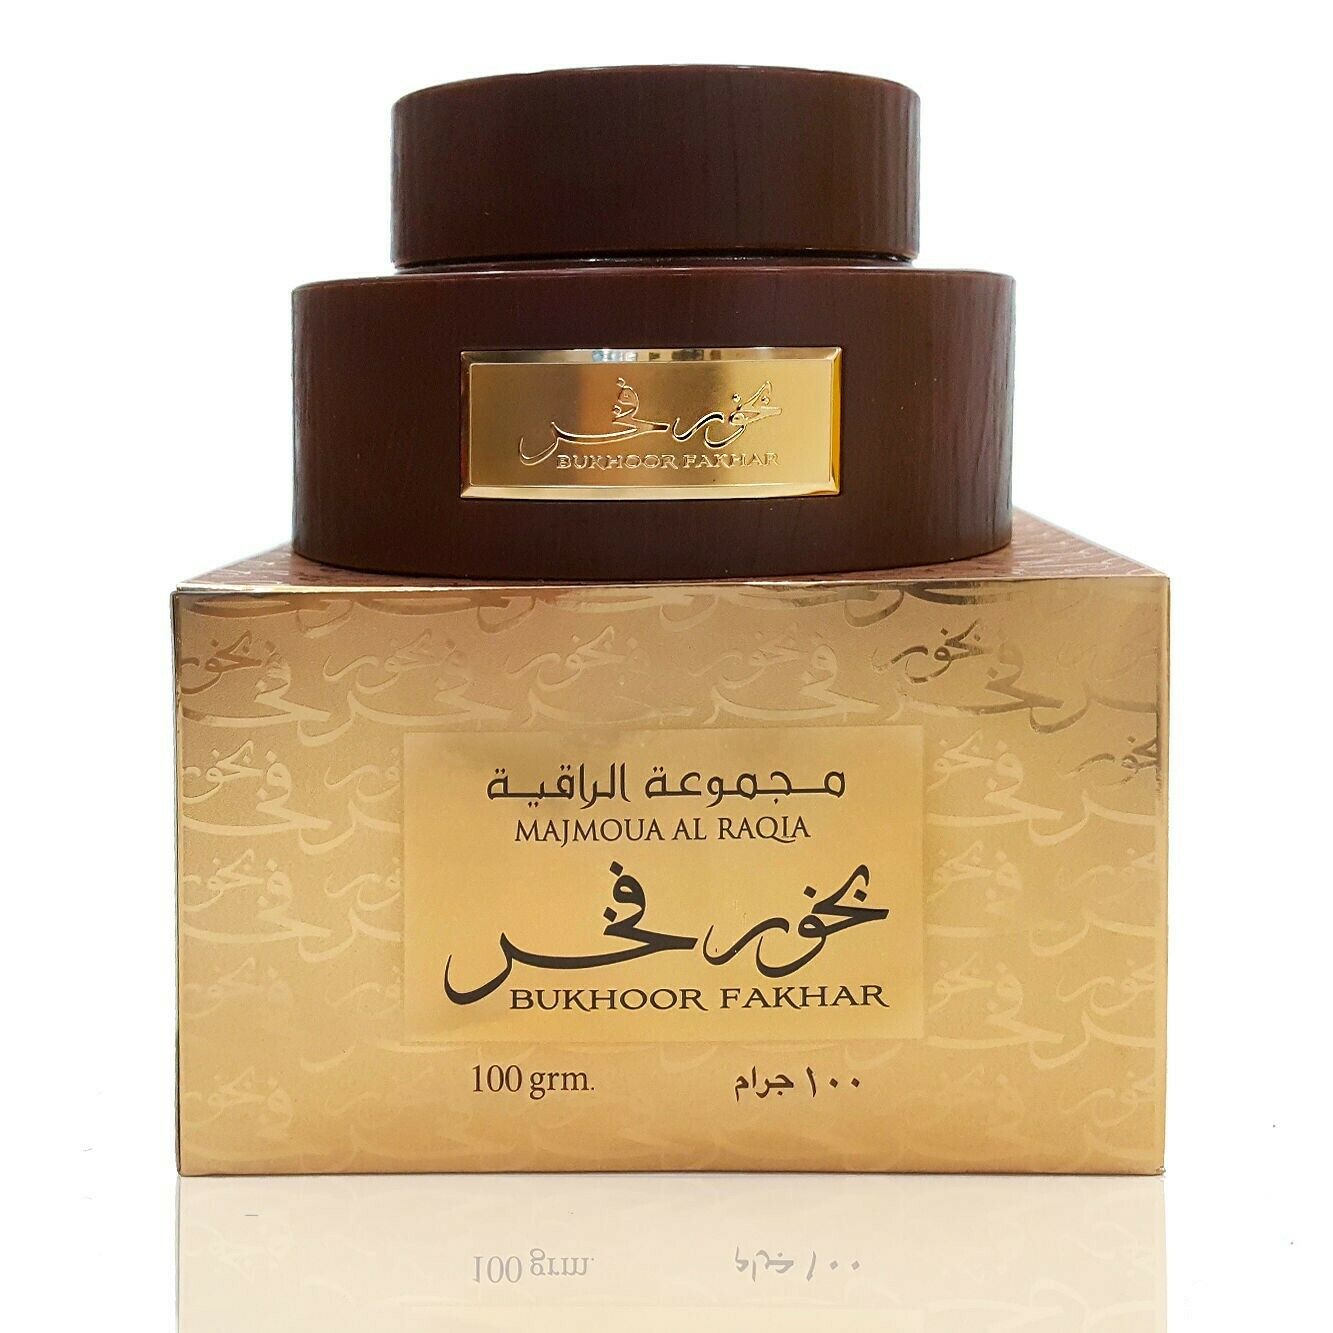 Majmoua Al Raqia Bukhoor Fakhar 100 grm-Perfume Heaven